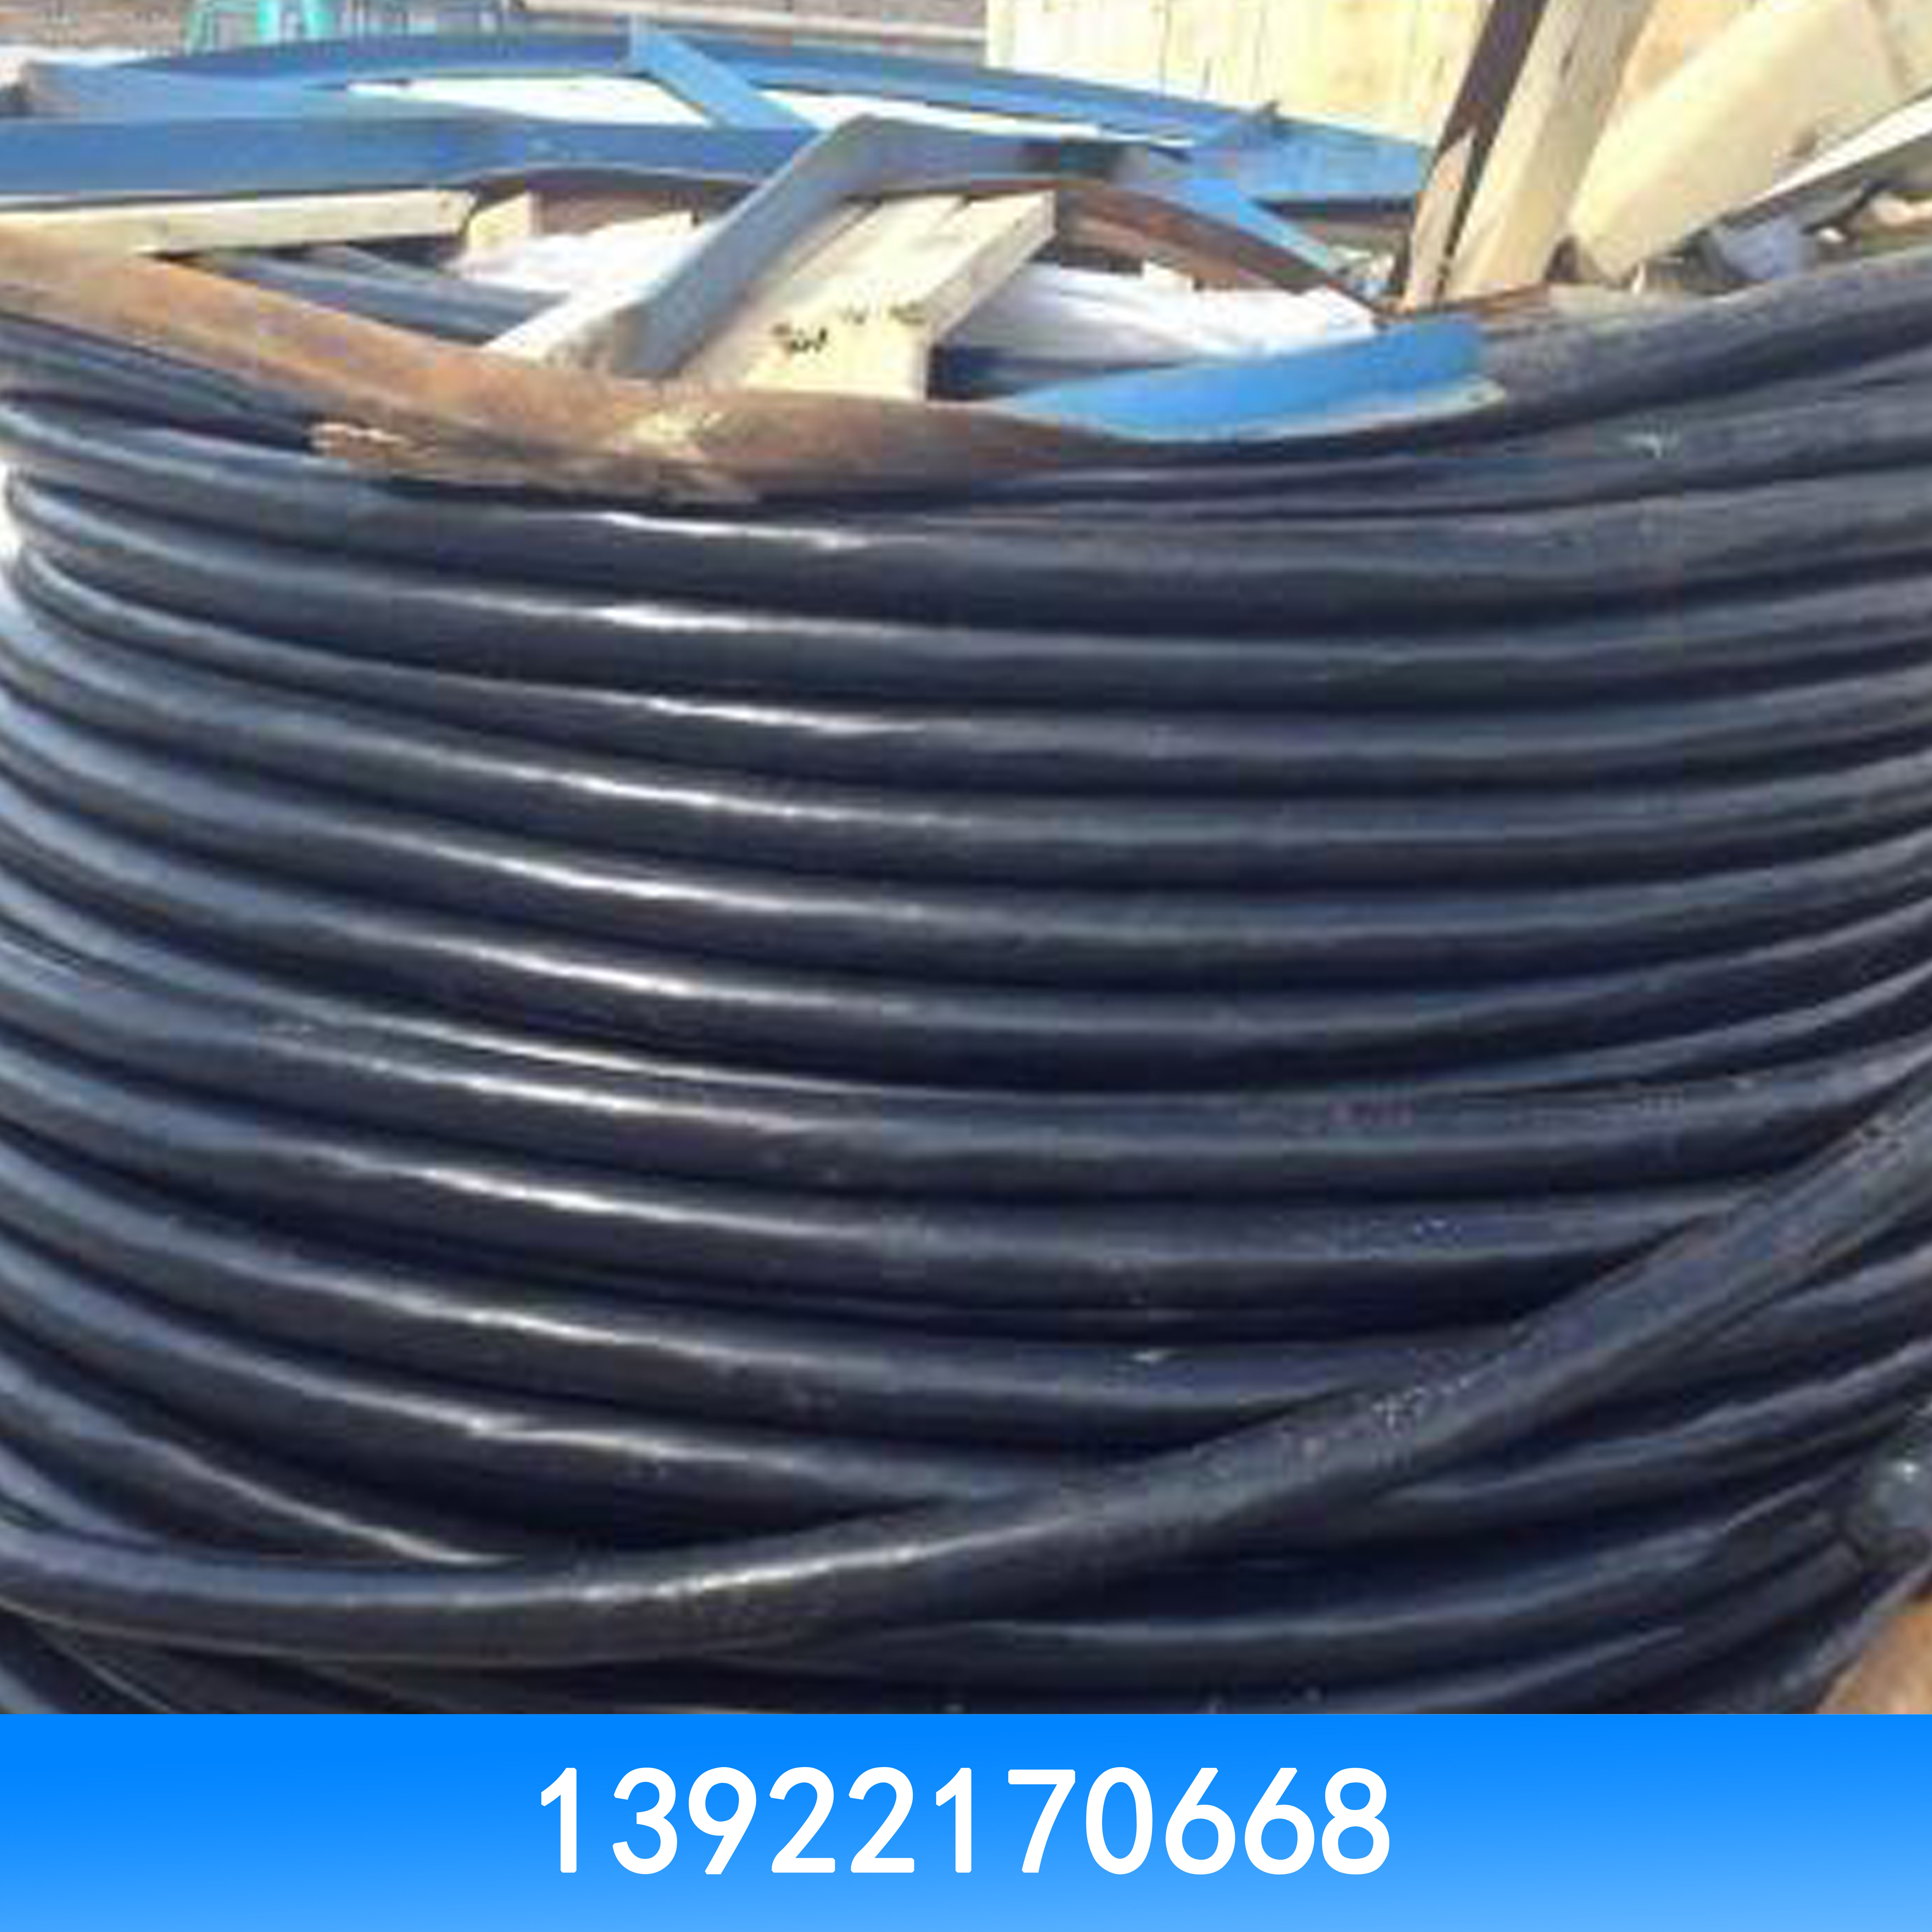 广州市高价回收二手电线电缆厂家高价回收电线电缆 高价回收二手电线电缆